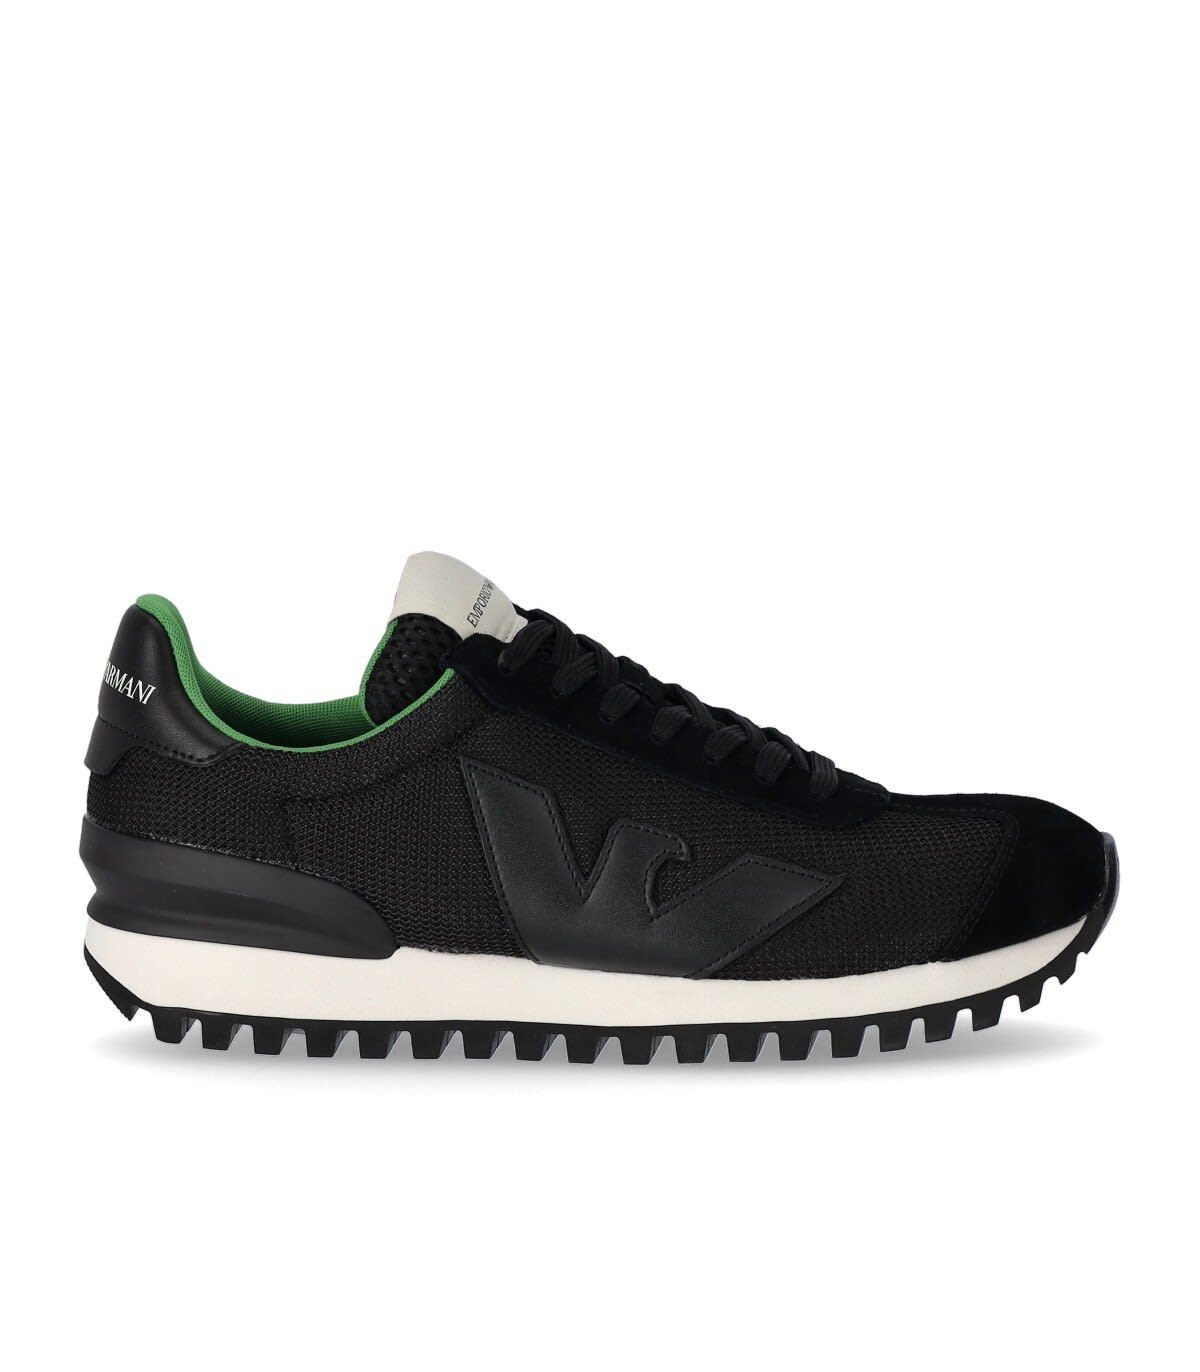 Emporio Armani Black Green Mesh Sneaker